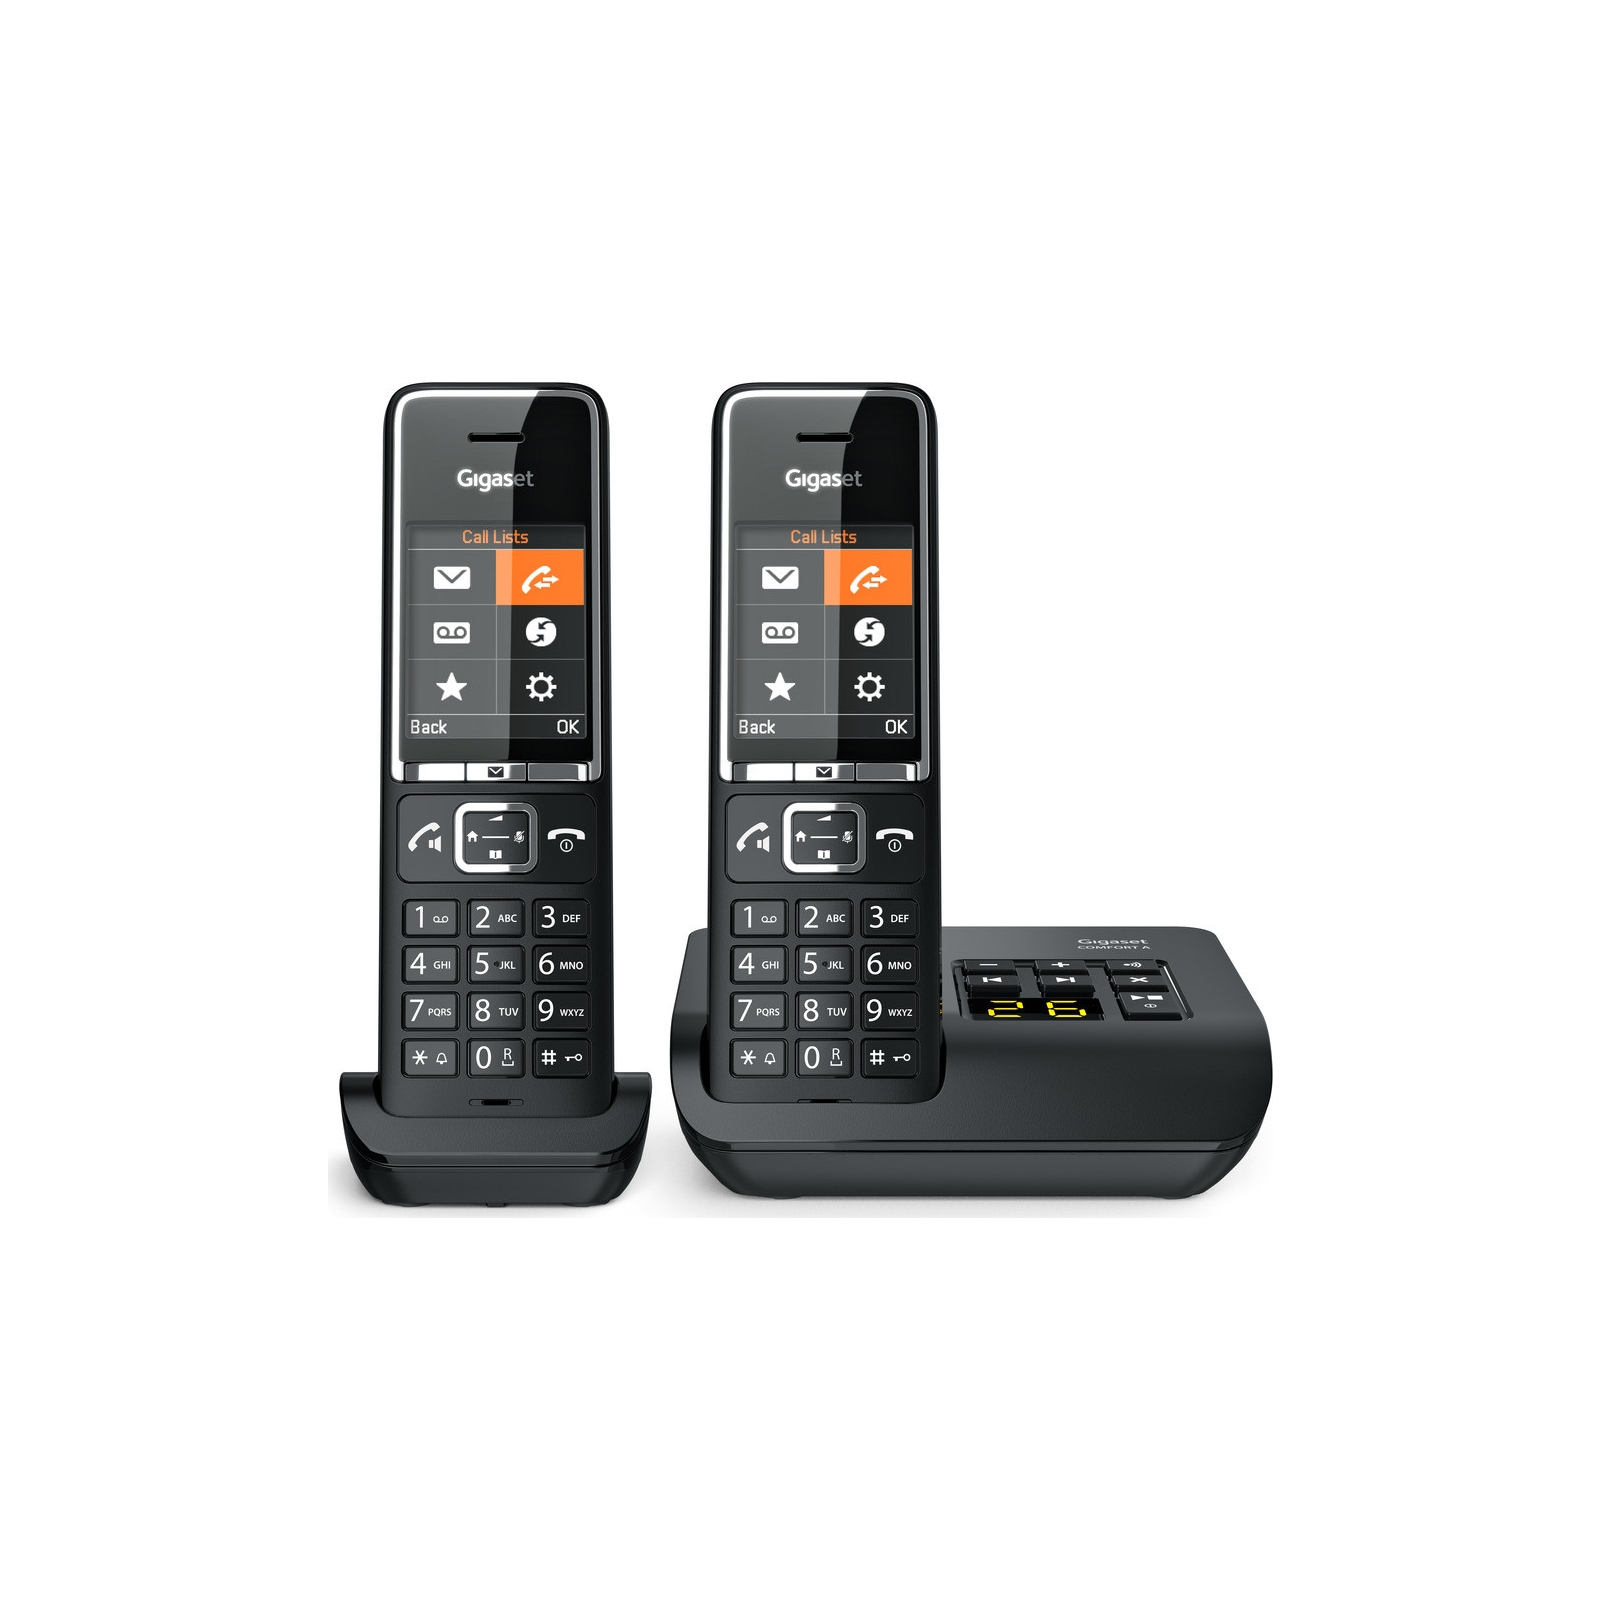 Телефон DECT Gigaset Comfort 550 AM DUO Black Chrome (L36852H3021S304)